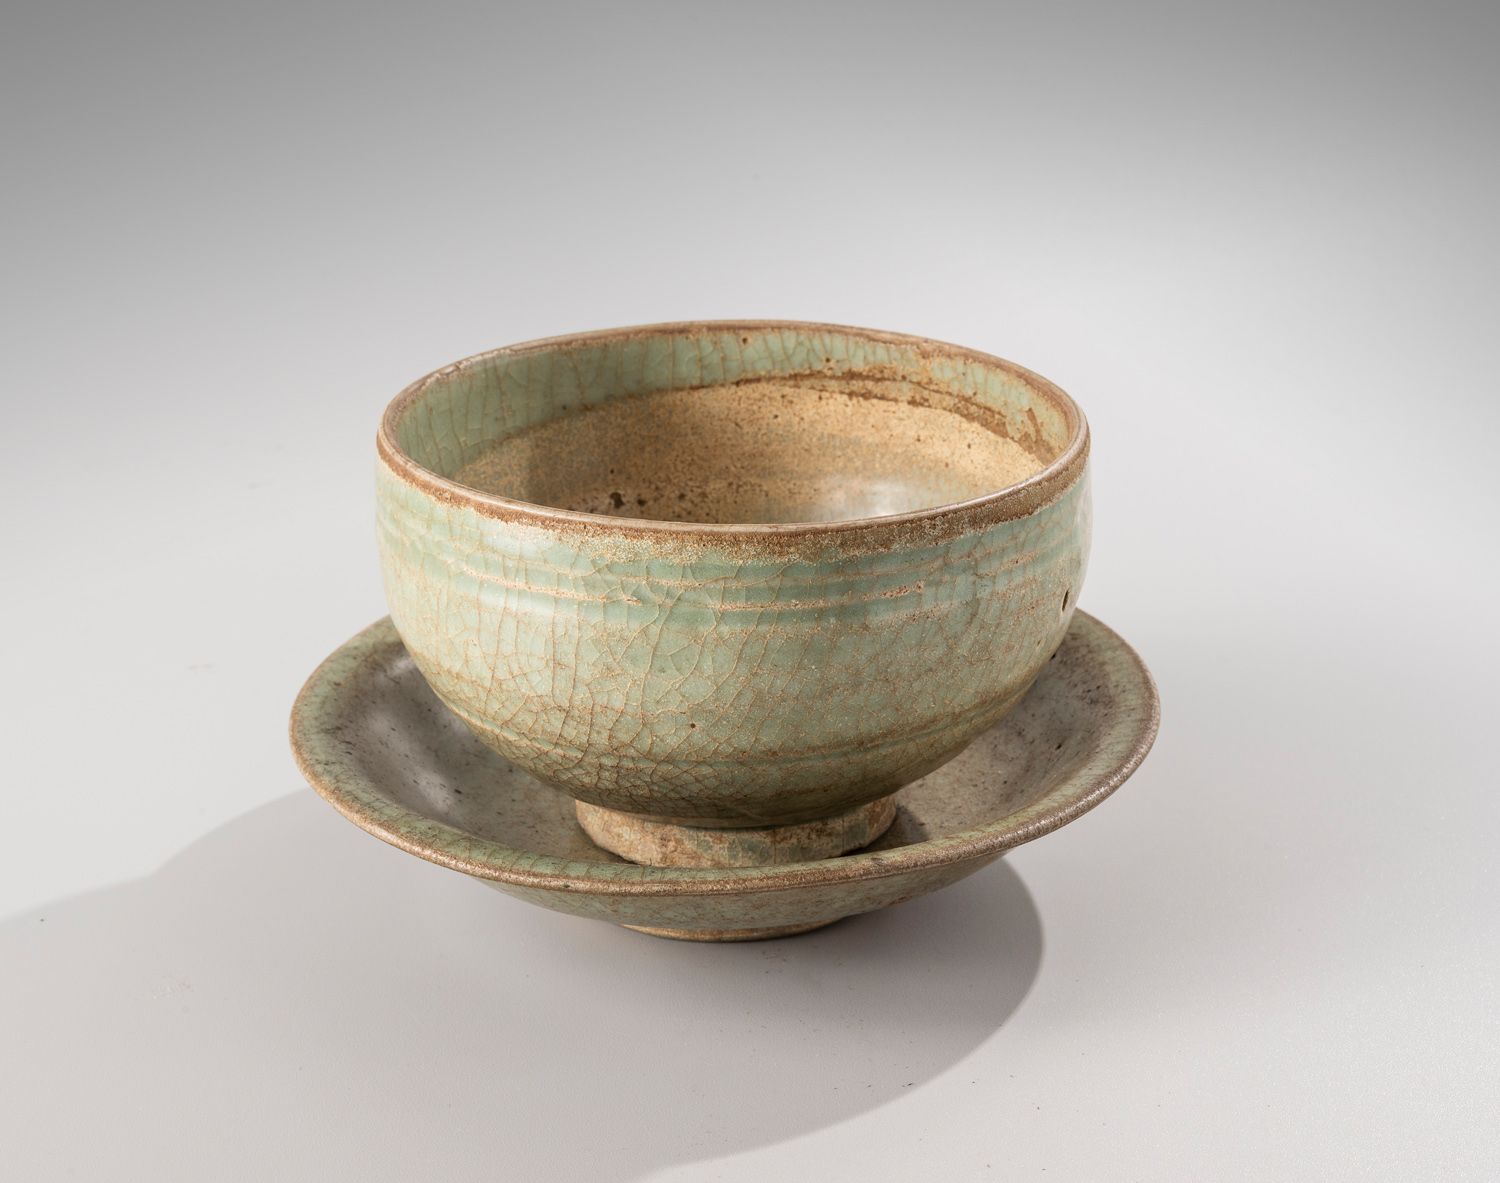 Null 中国，明朝时期，15-16世纪

青瓷釉面的陶瓷碗和杯子，碗里有

刻画的莲花花瓣装饰。

直径13.2和16.6厘米